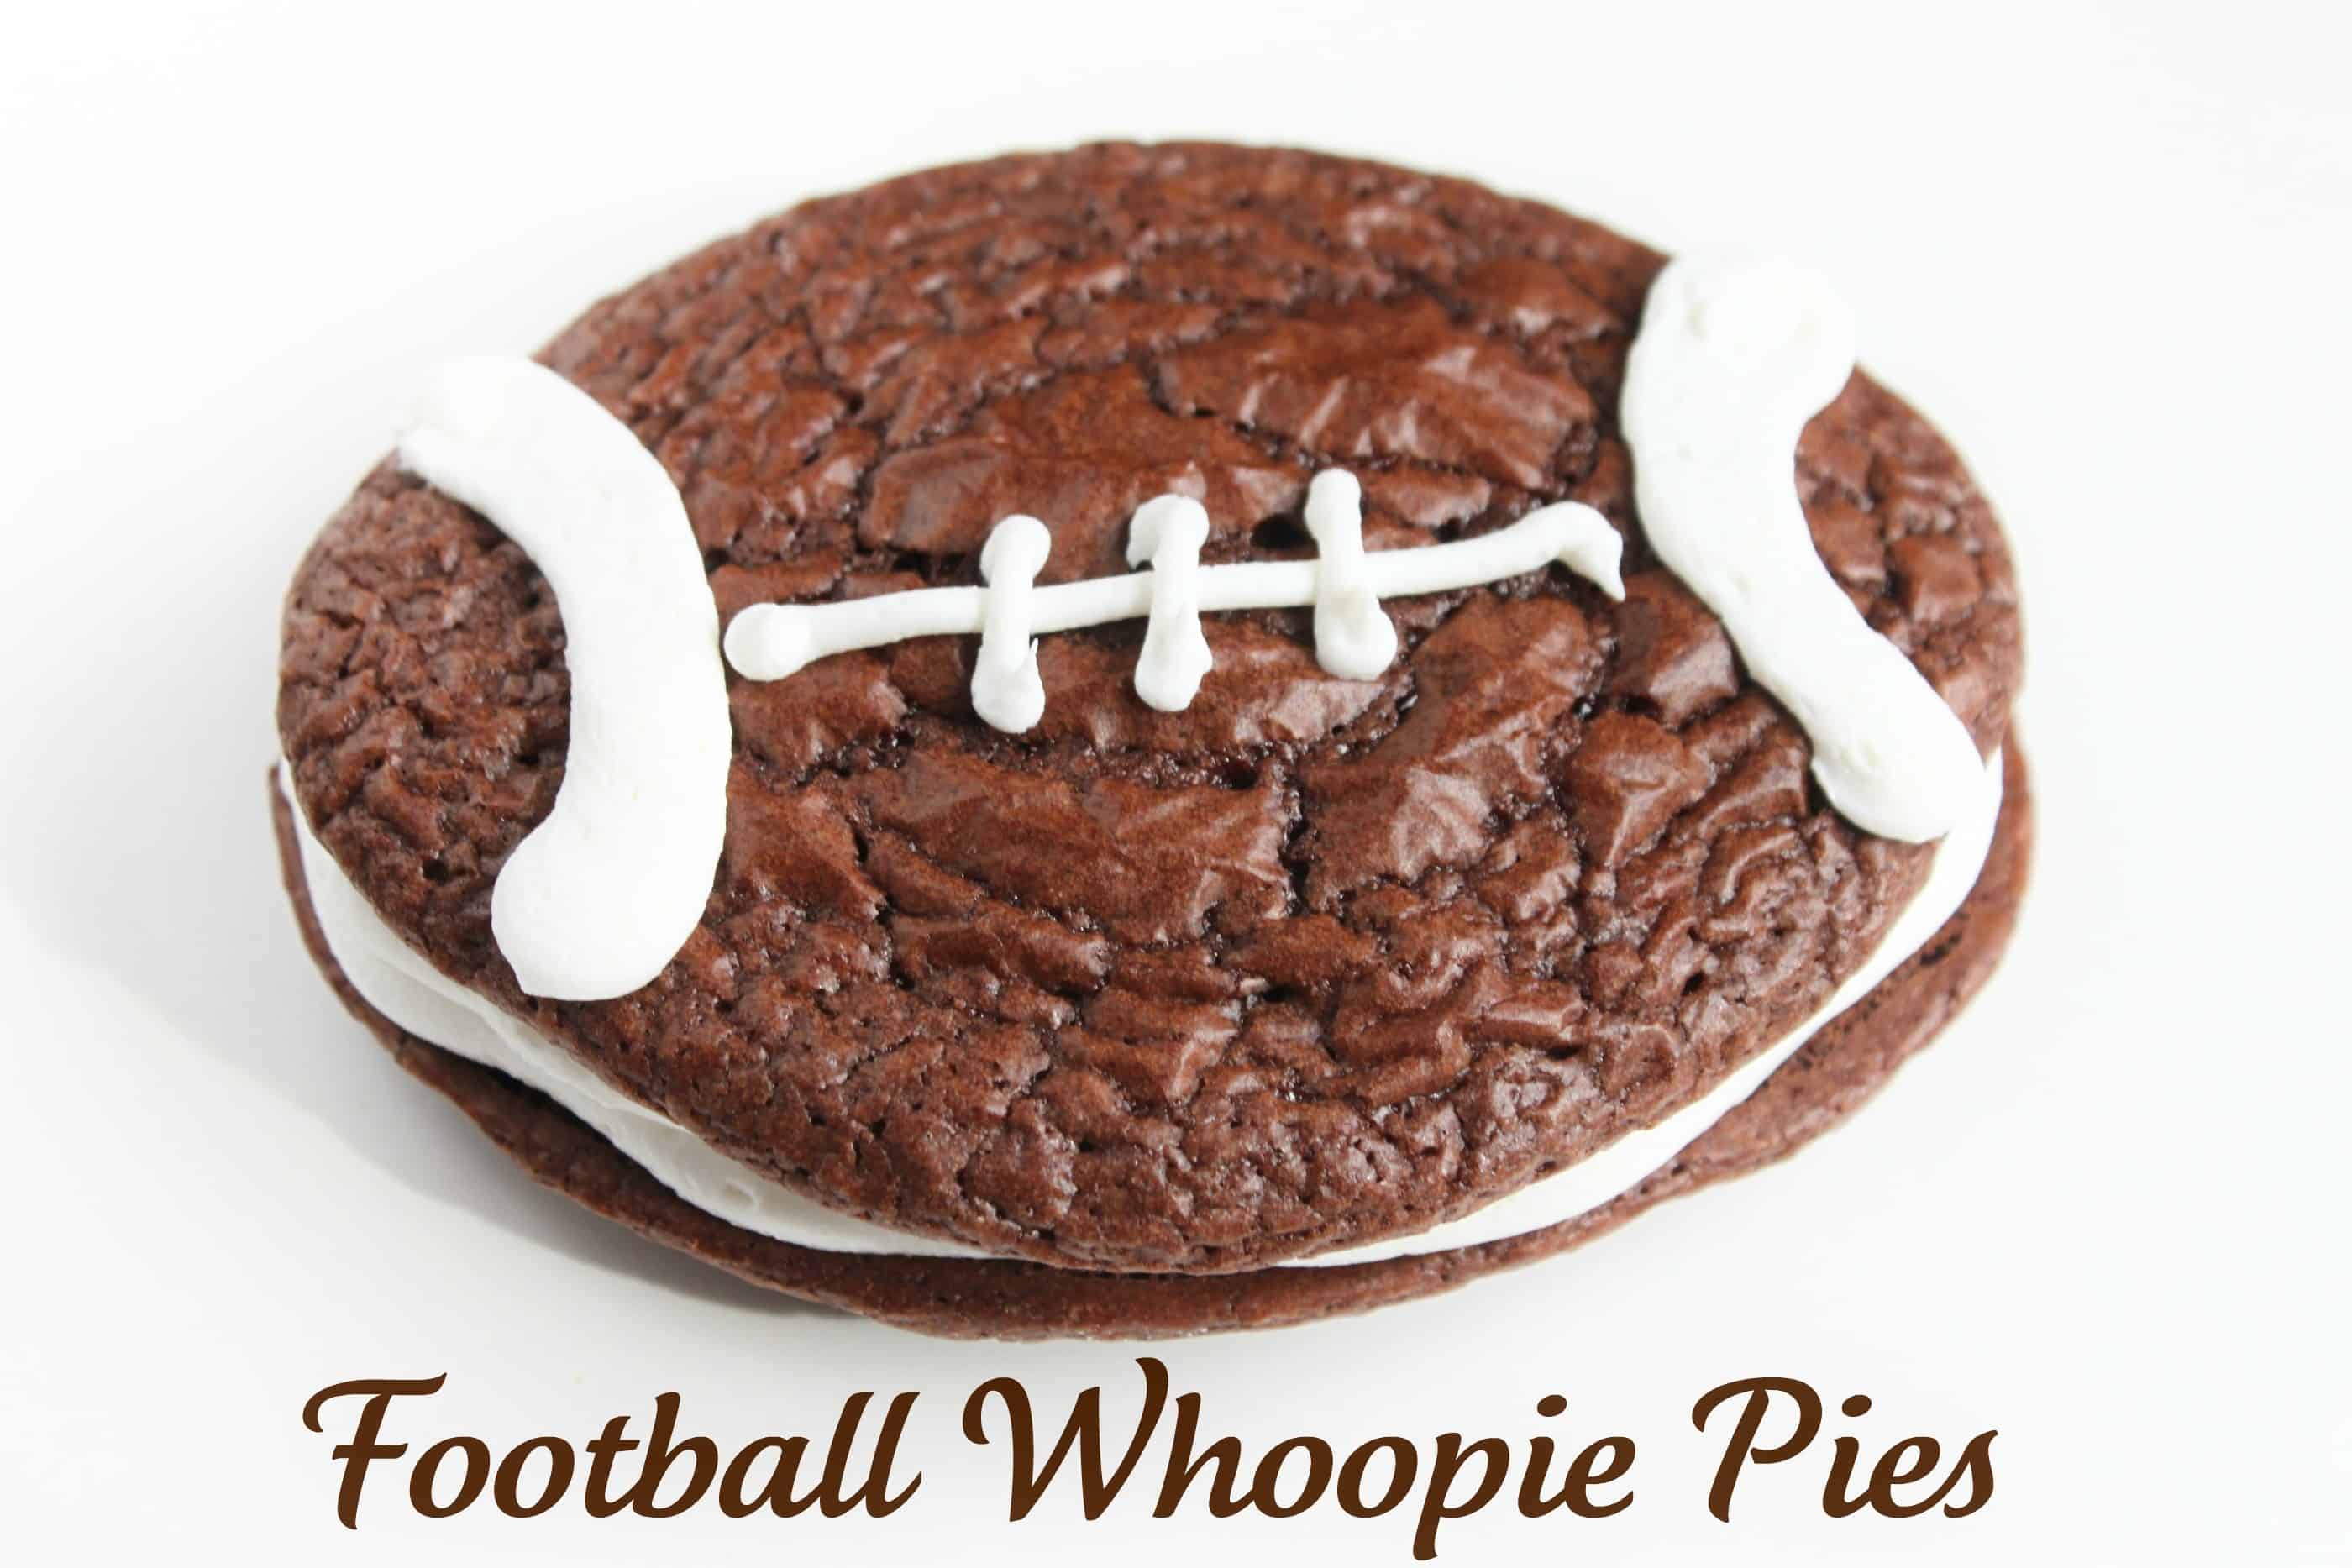 Football Whoopie Pies